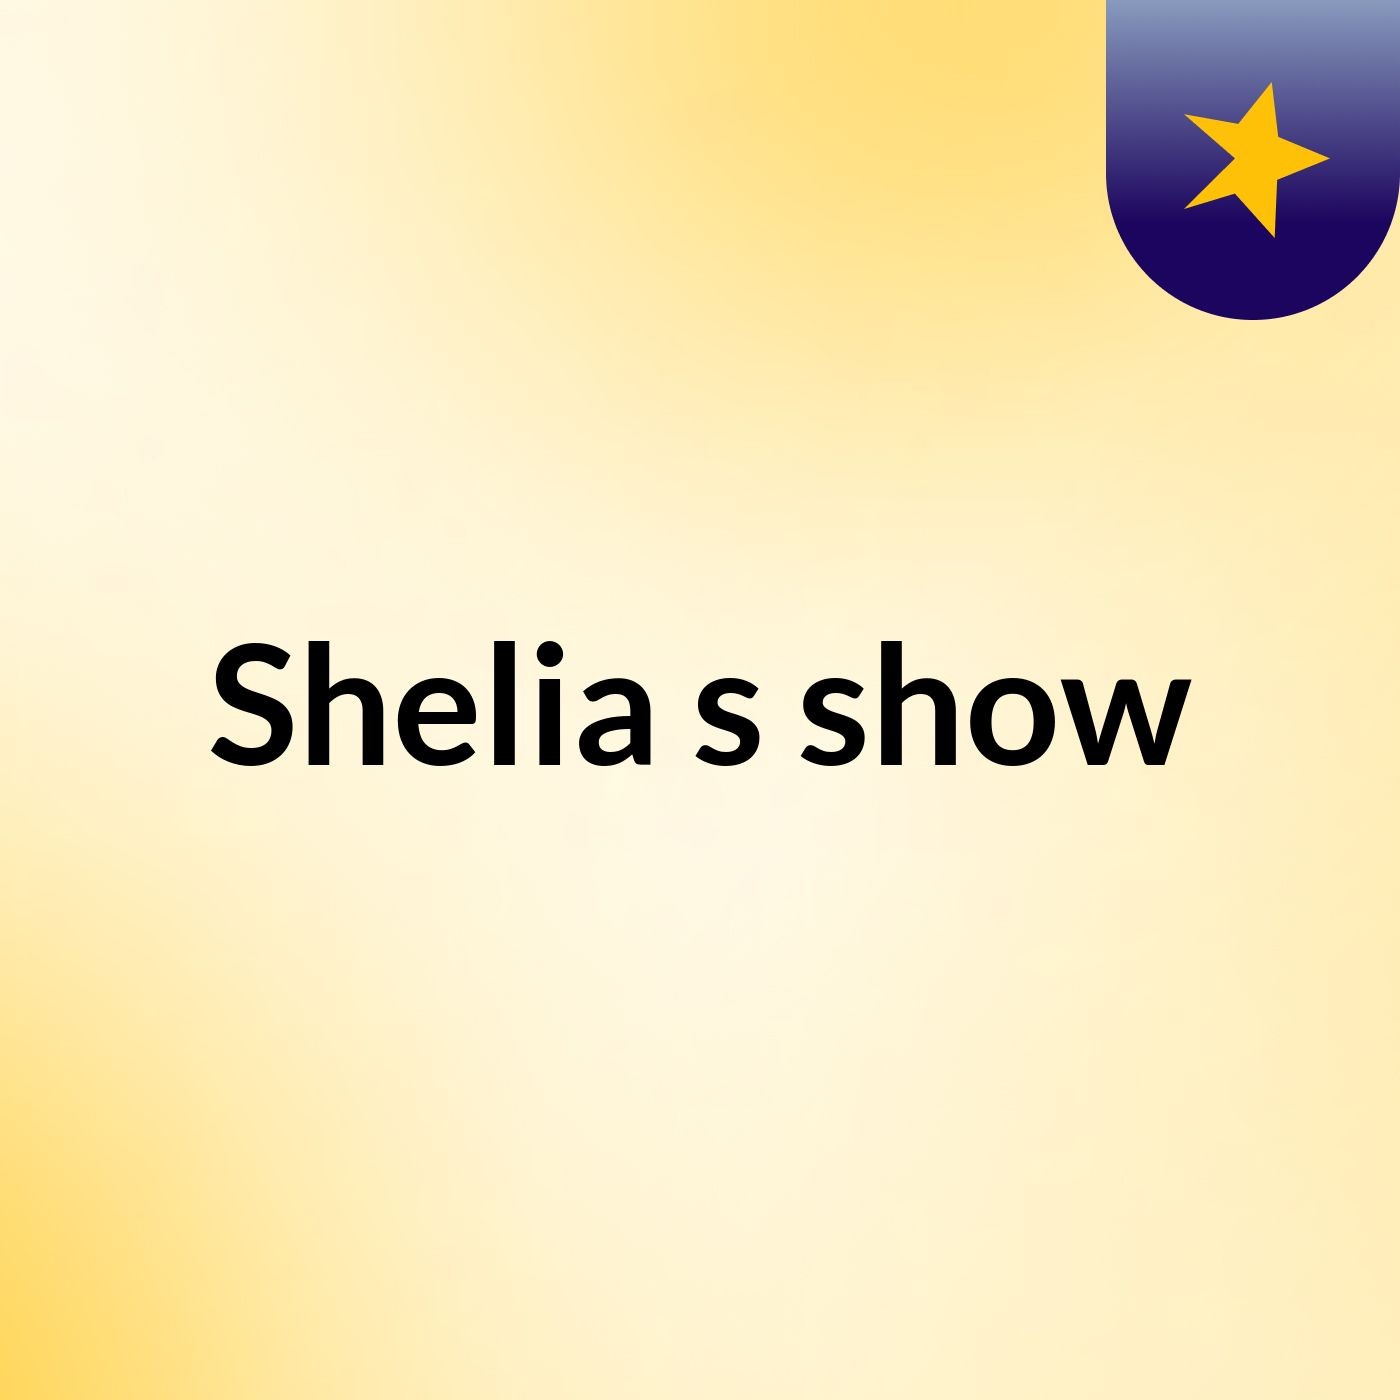 Shelia's show